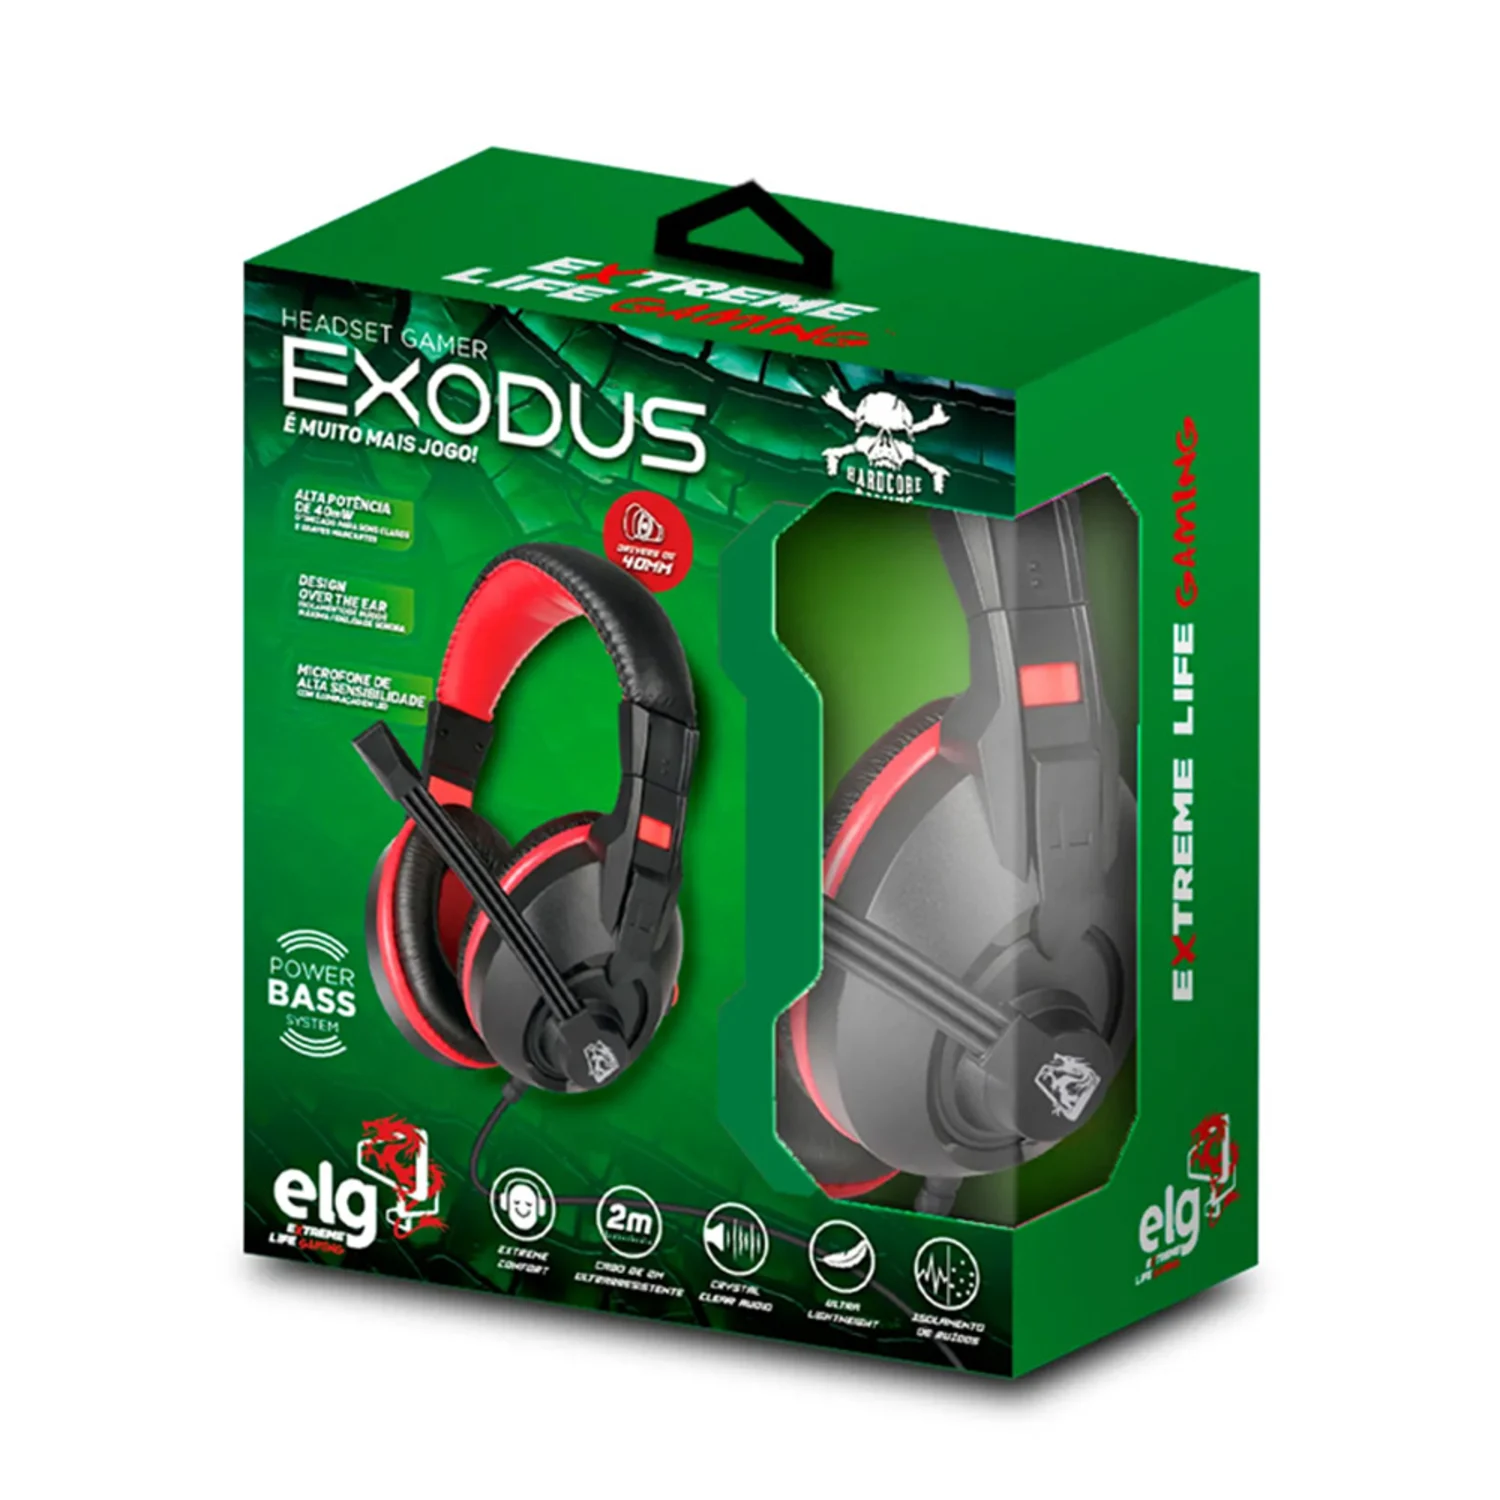 Headset Gamer Elg Hgex Exodus - Preto E Vermelho